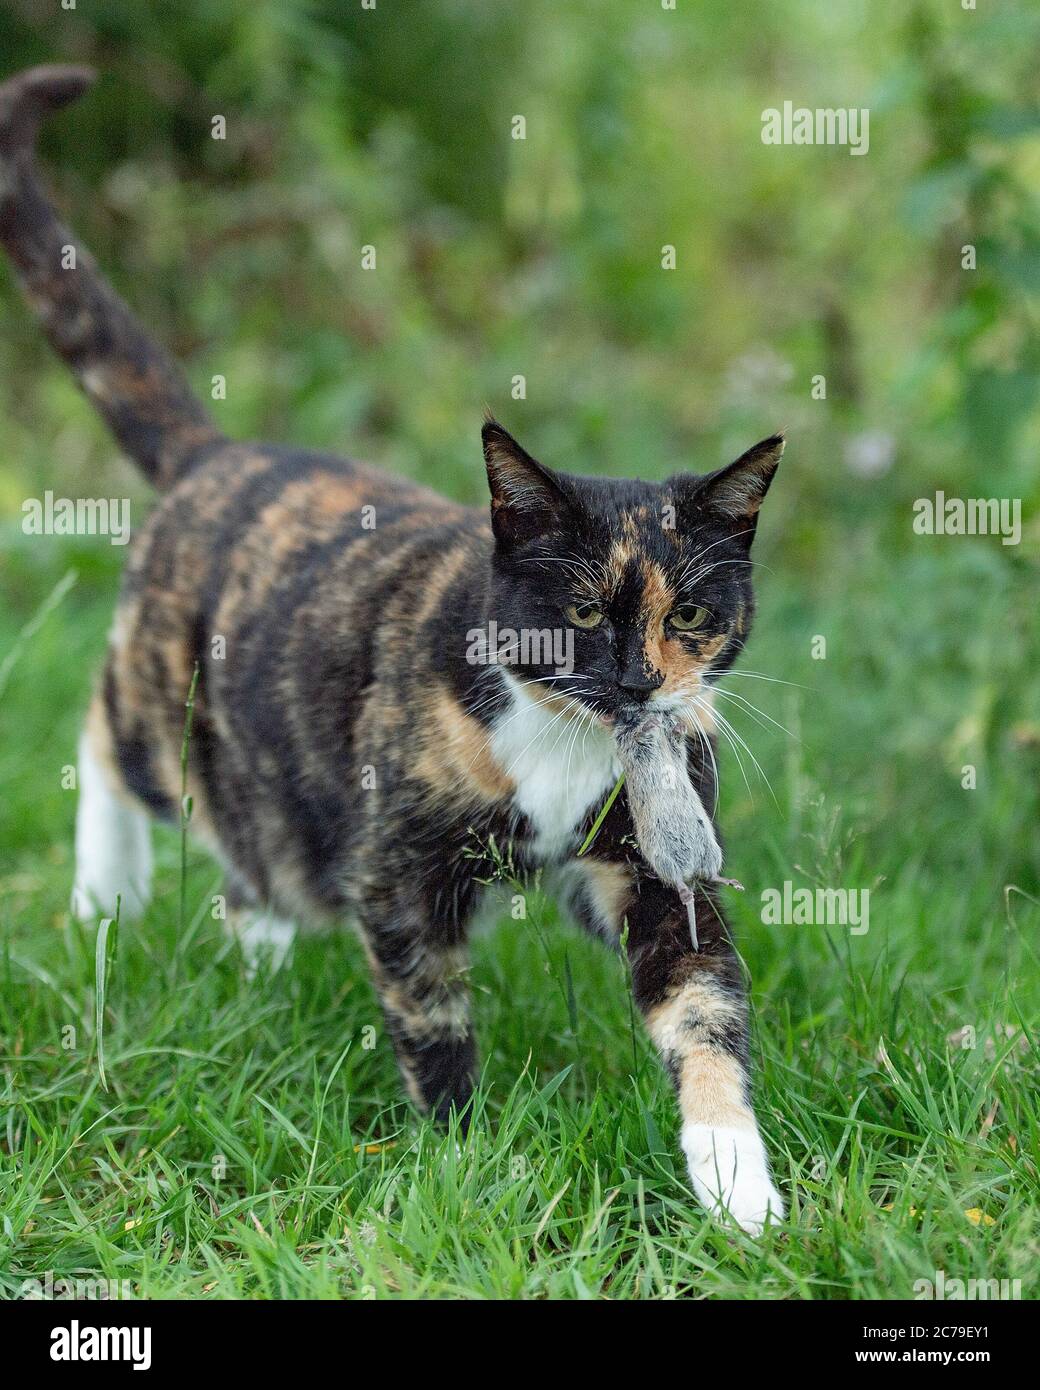 gato llevando el ratón vole que ha capturado Foto de stock